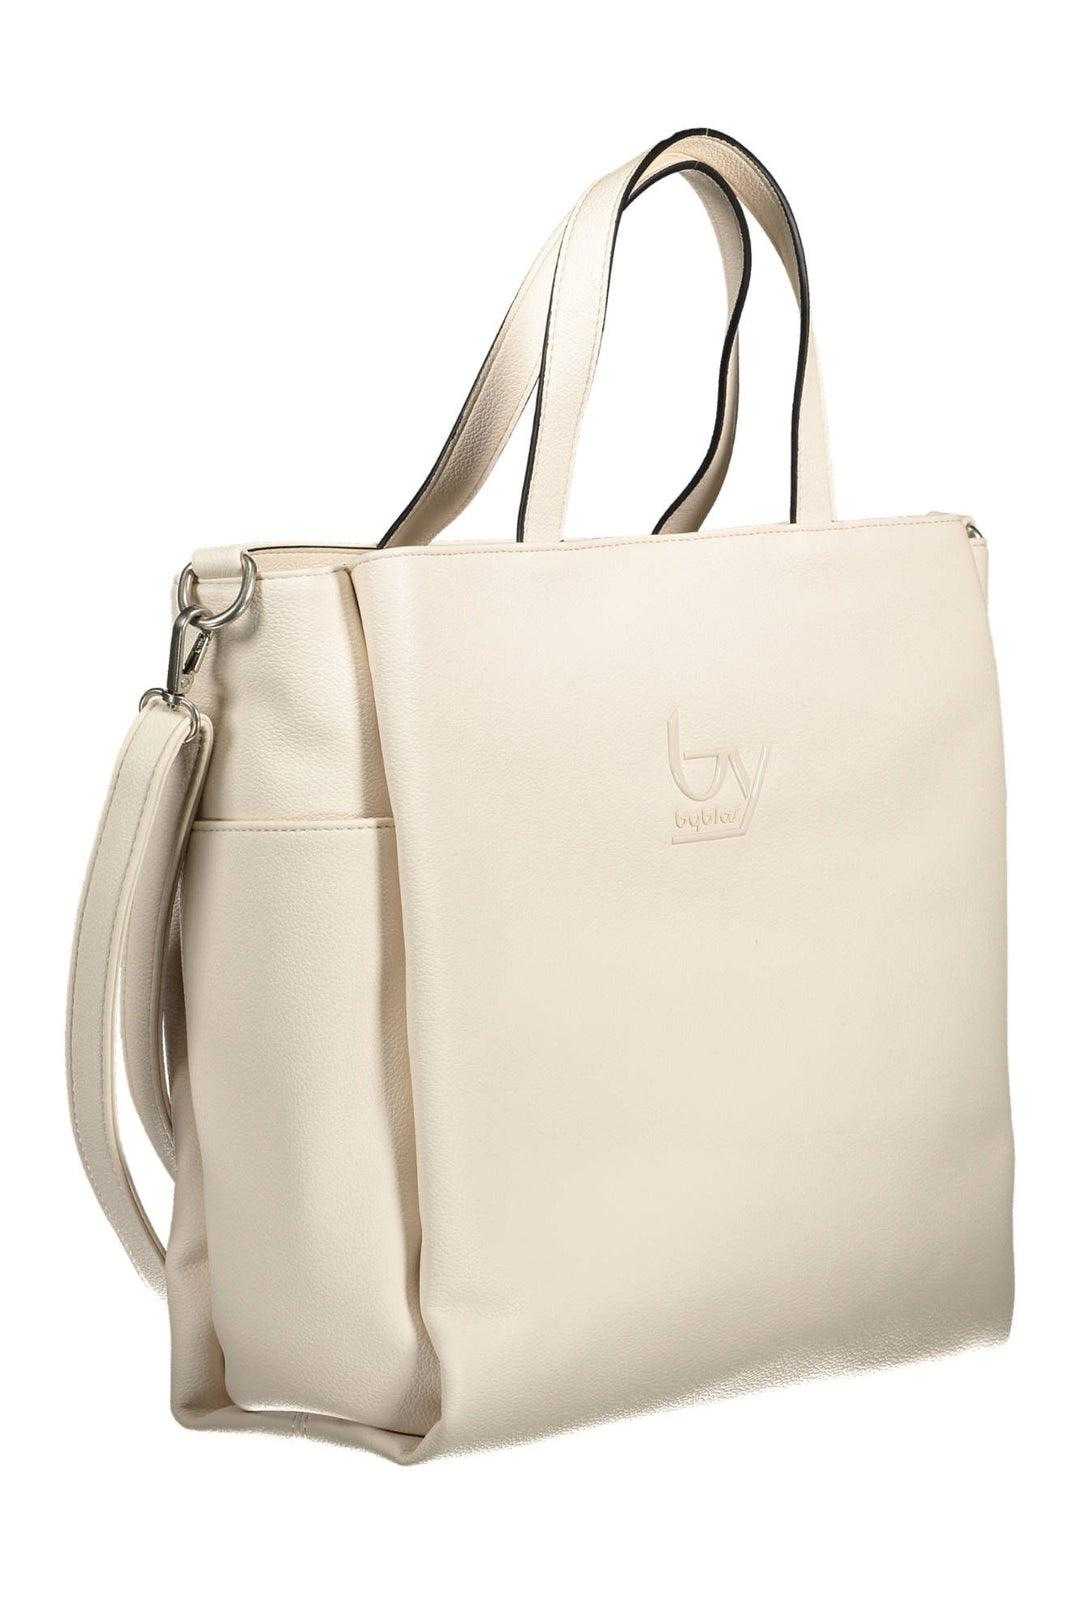 BYBLOS Elegant White Multi-Pocket Handbag